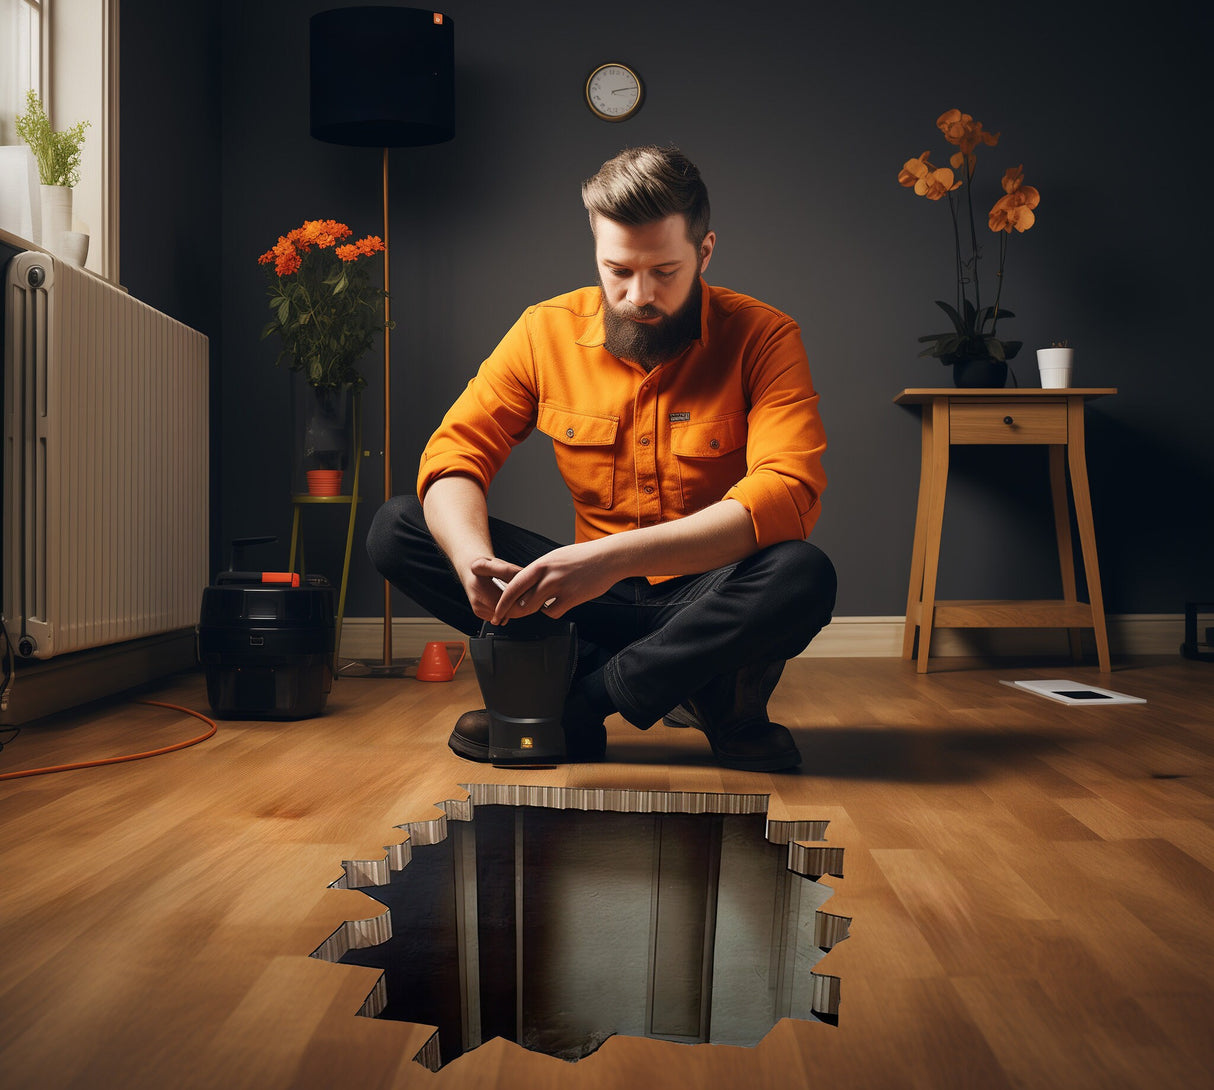 Kütkestav 3D Illusion Hole põrandakleebis – illumineeriv kunstkaunistus keldrivaatega